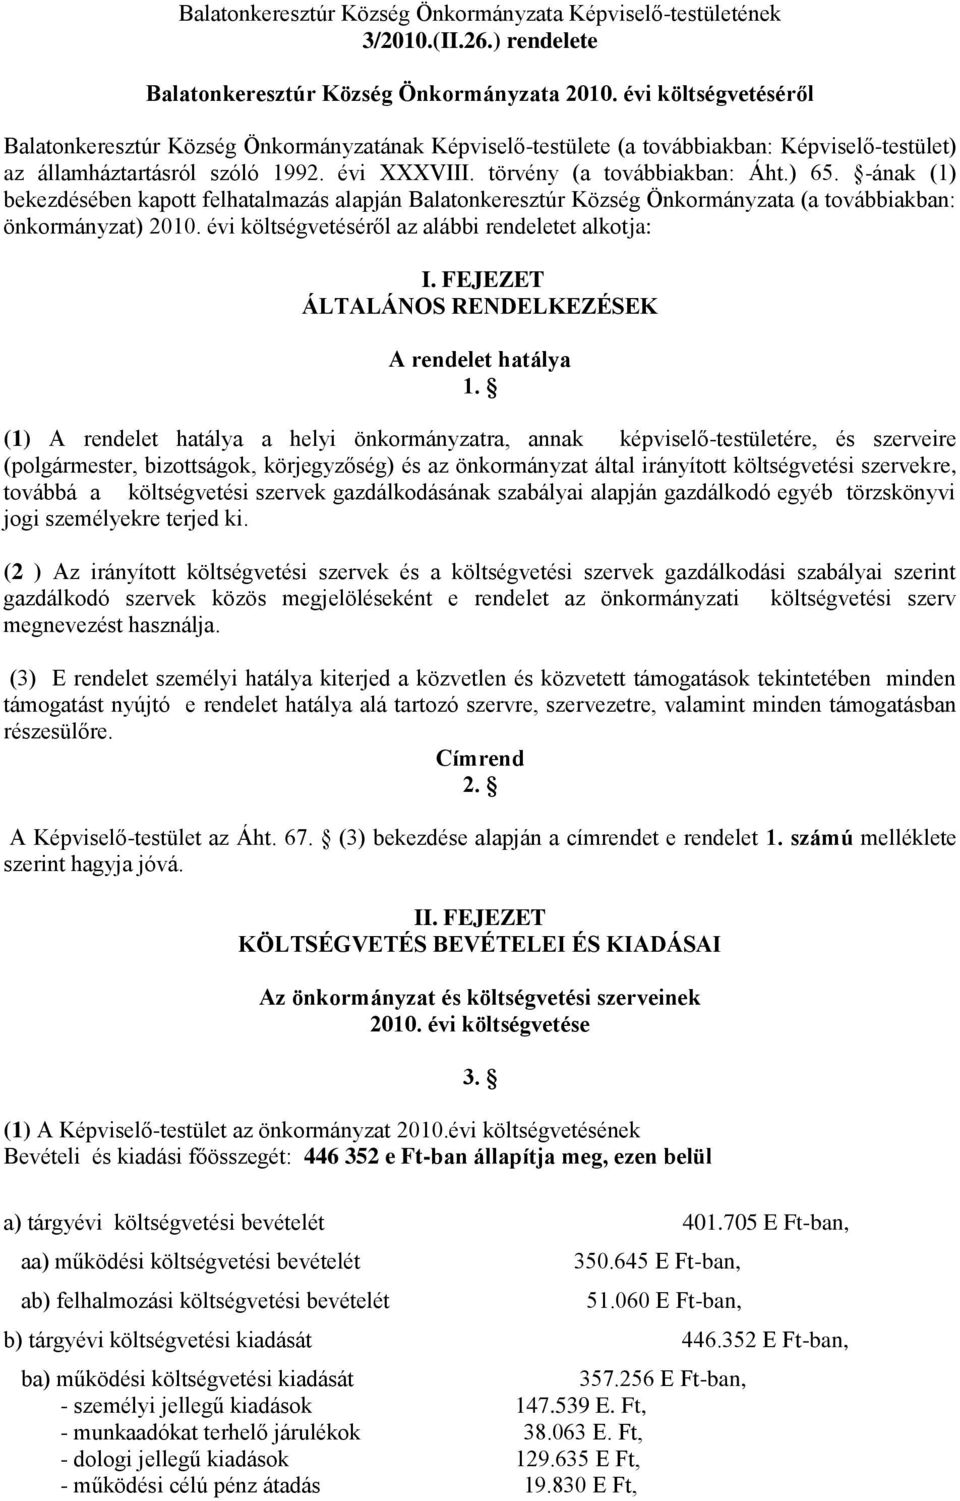 -ának (1) bekezdésében kapott felhatalmazás alapján Balatonkeresztúr Község Önkormányzata (a továbbiakban: önkormányzat) 2010. évi költségvetéséről az alábbi rendeletet alkotja: I.